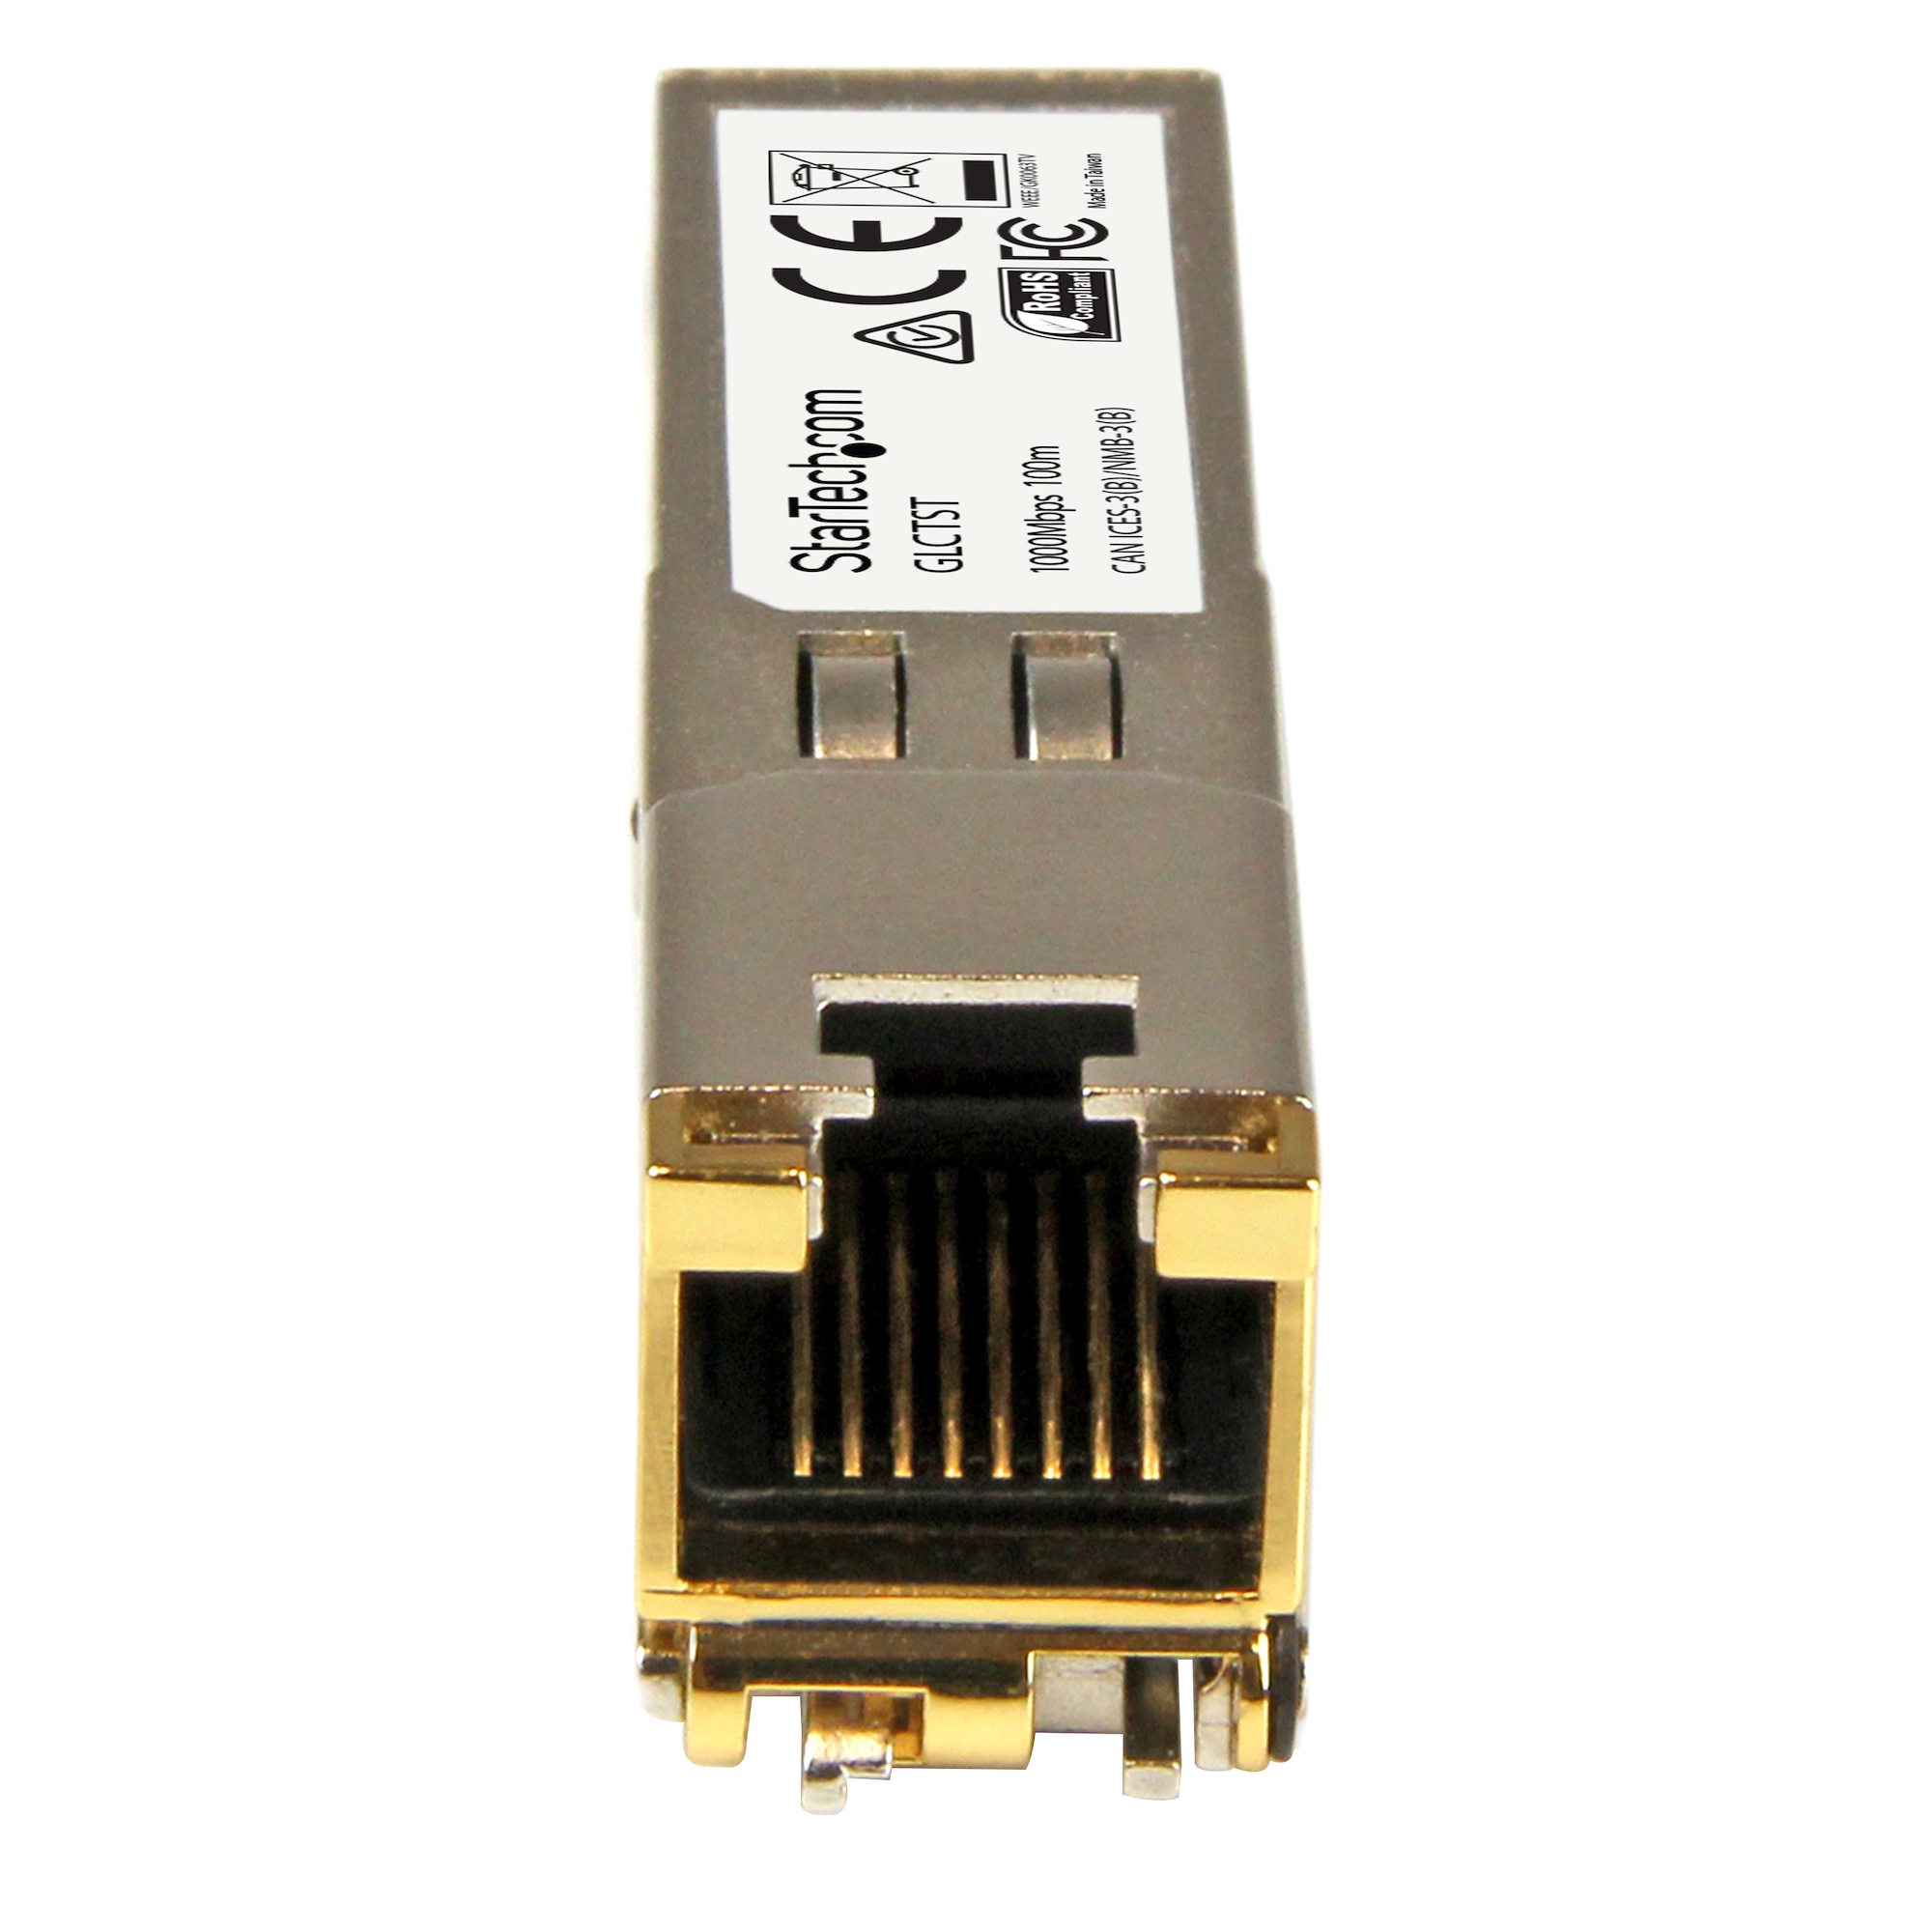 Cisco GLC-T Compatible SFP Module - 1000BASE-T - SFP to RJ45 Cat6/Cat5e -  1GE Gigabit Ethernet SFP - RJ-45 100m - Cisco Firepower, ASR920, IE2000